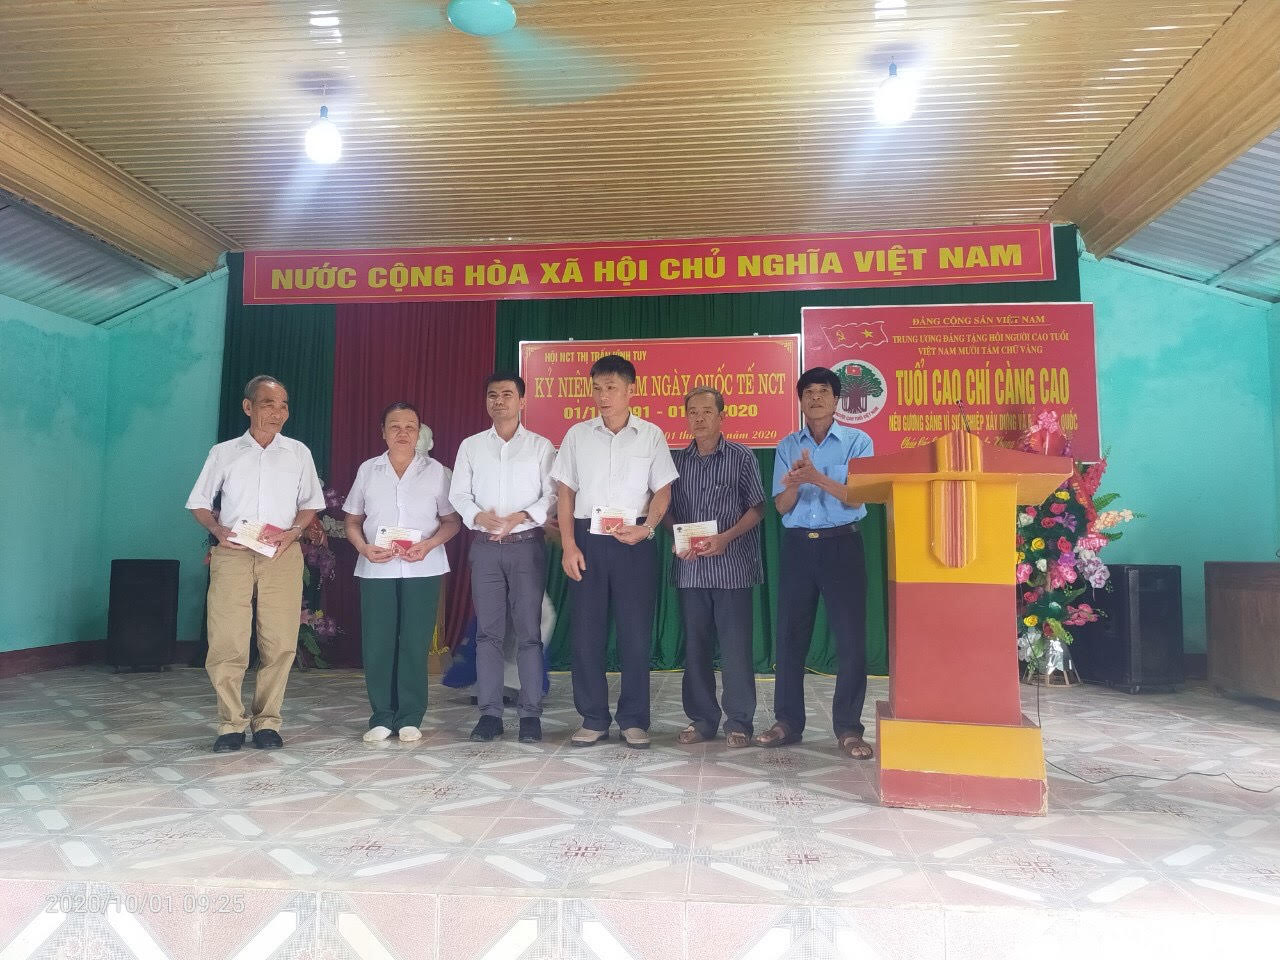 Thị trấn Vĩnh Tuy tổ chức Lễ kỷ niệm 30 năm ngày Quốc tế Người cao tuổi (01/10/1991-01/10/2020)